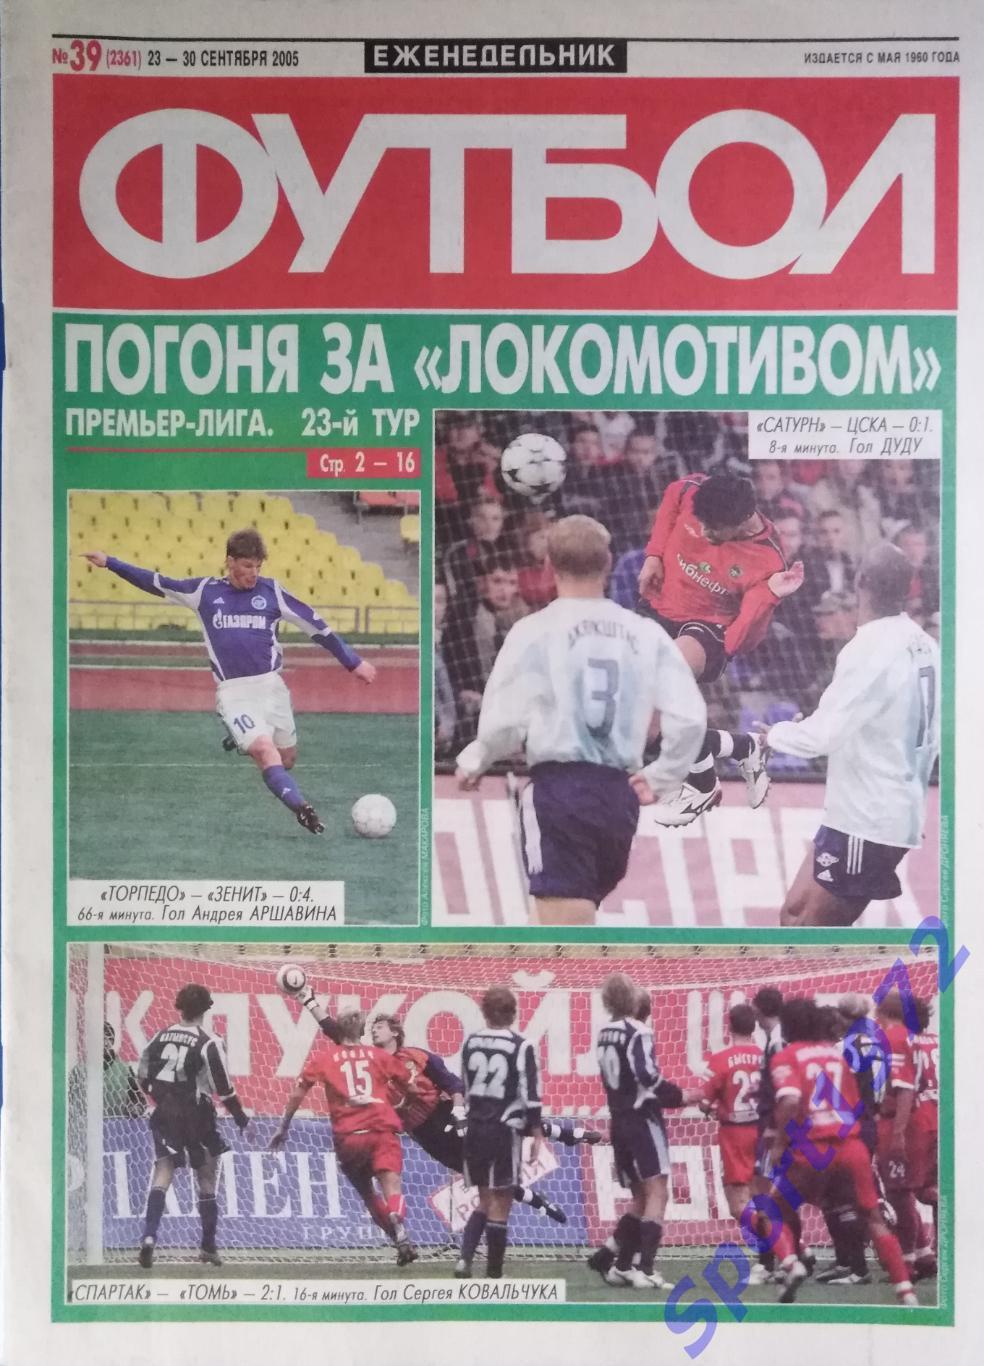 Еженедельник Футбол. №39 - 2005.